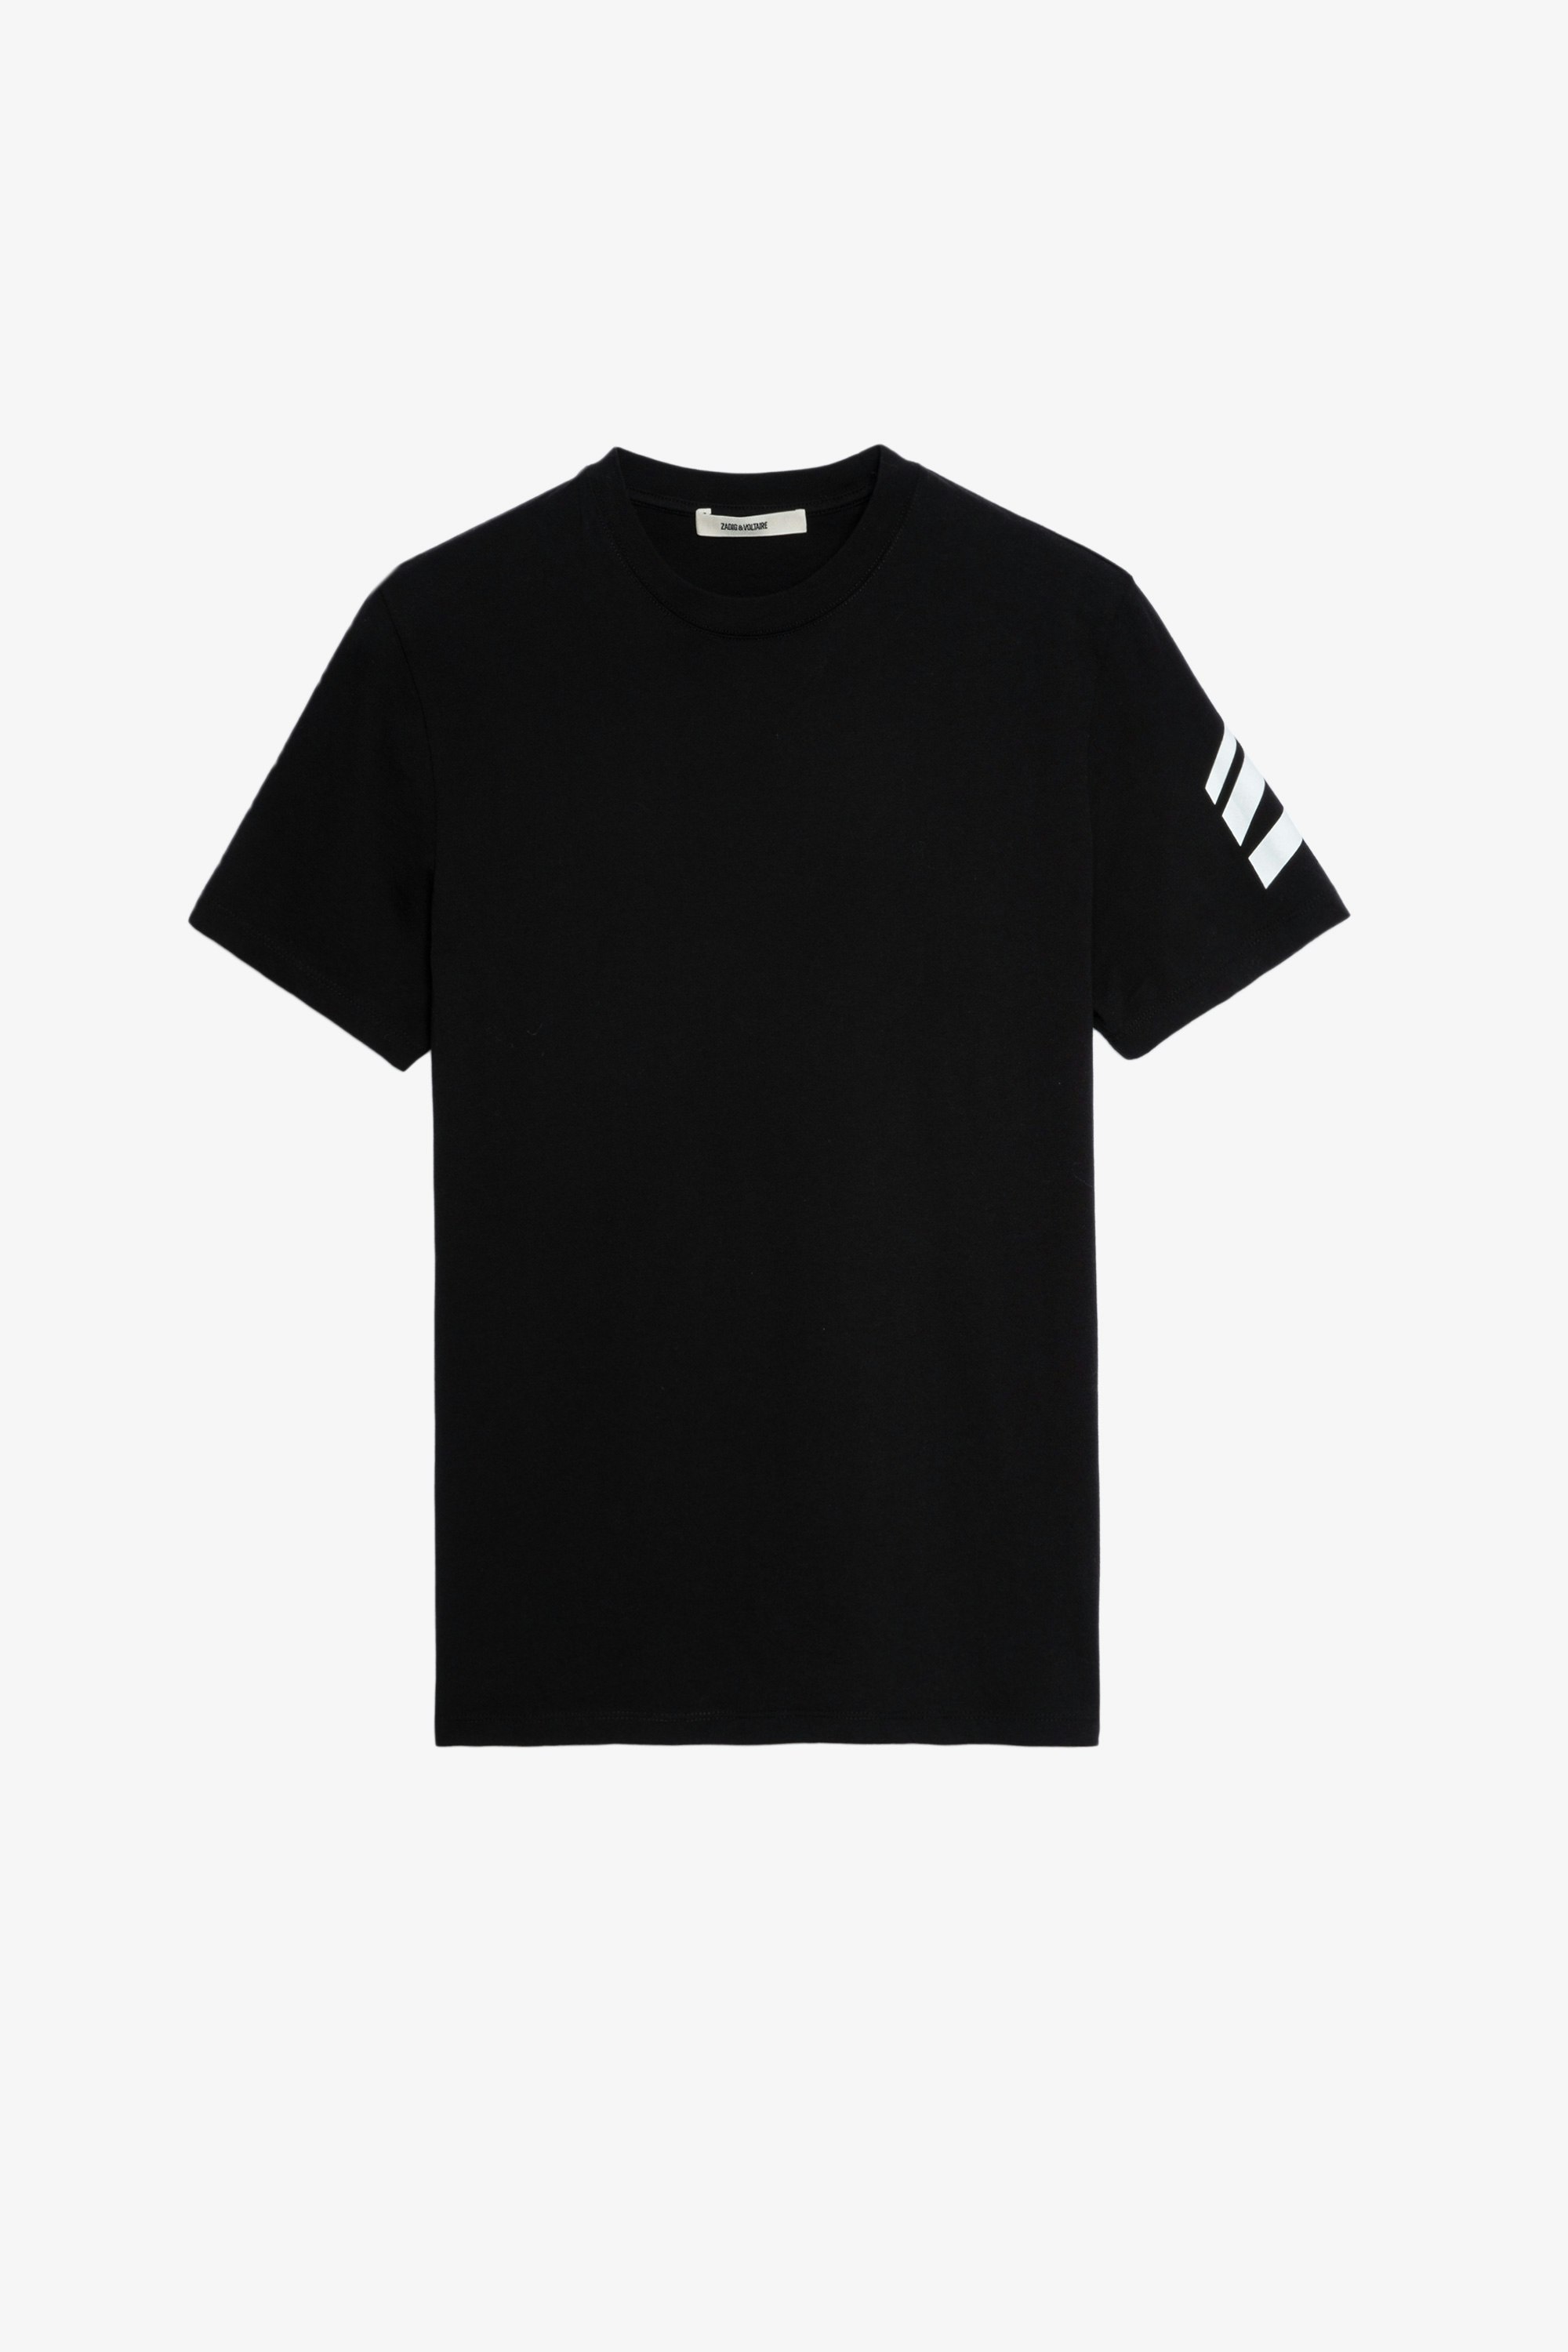 T-Shirt Tommy HC Arrow  Tee-shirt en coton de couleur noire avec une flèche inscrite sur la manche gauche Homme